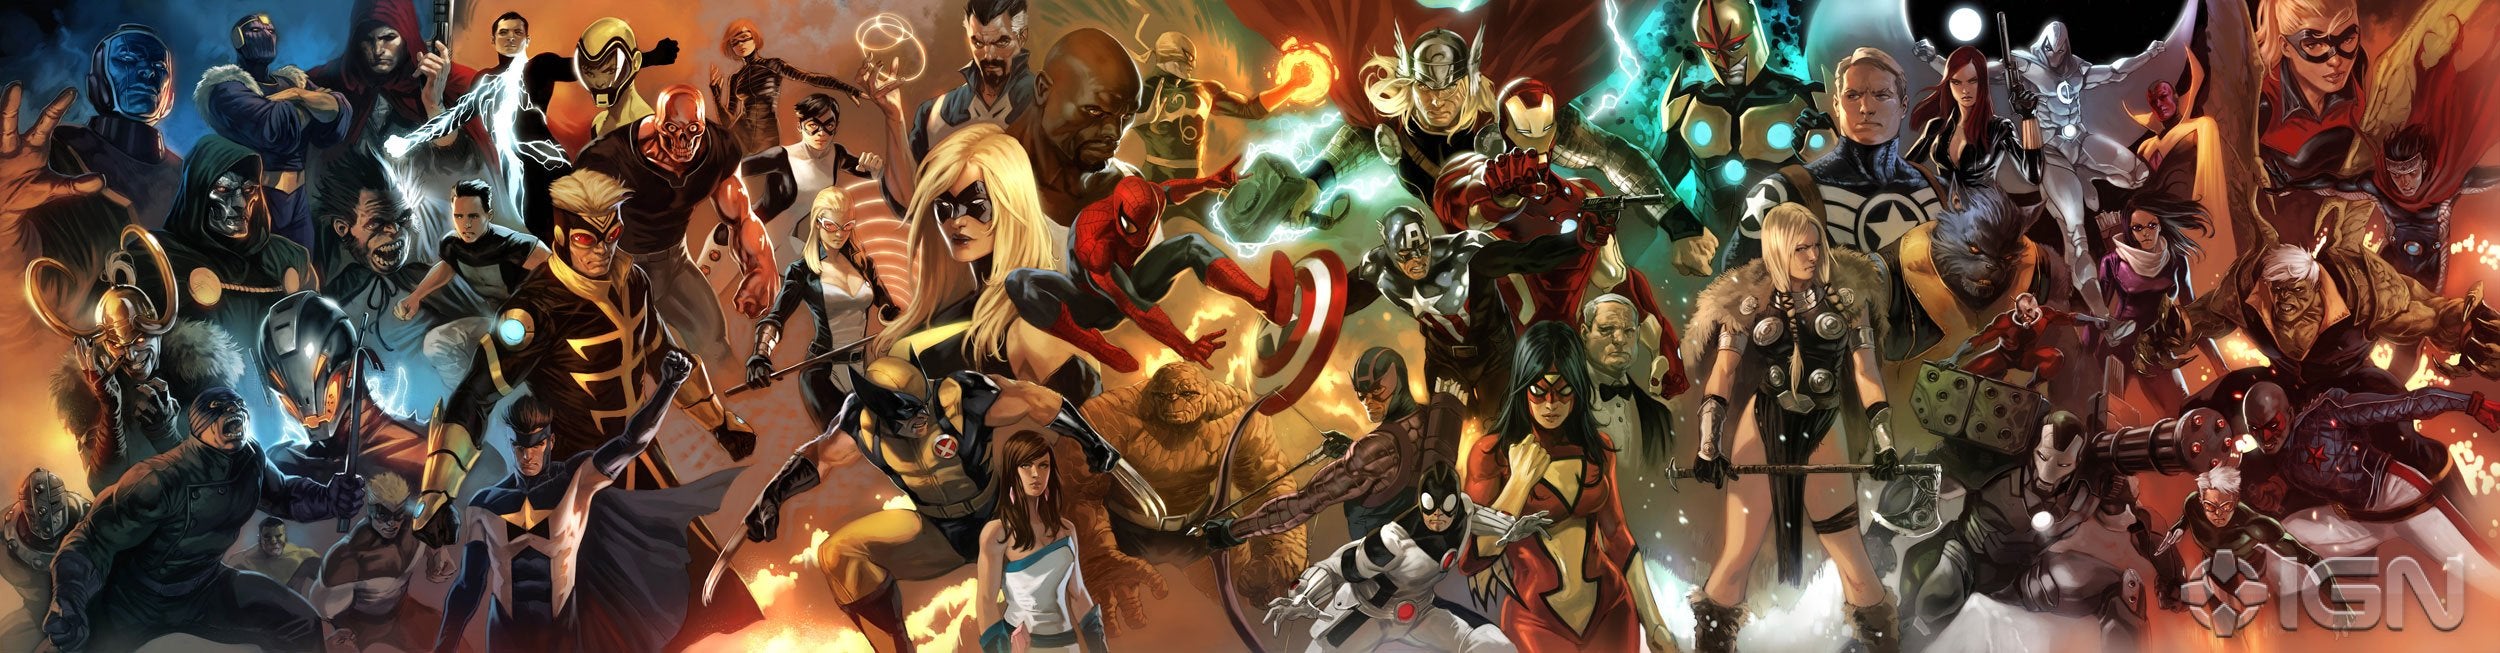 c2e2-10-presenting-marvels-avengers-franchise-20100418005332296.jpg